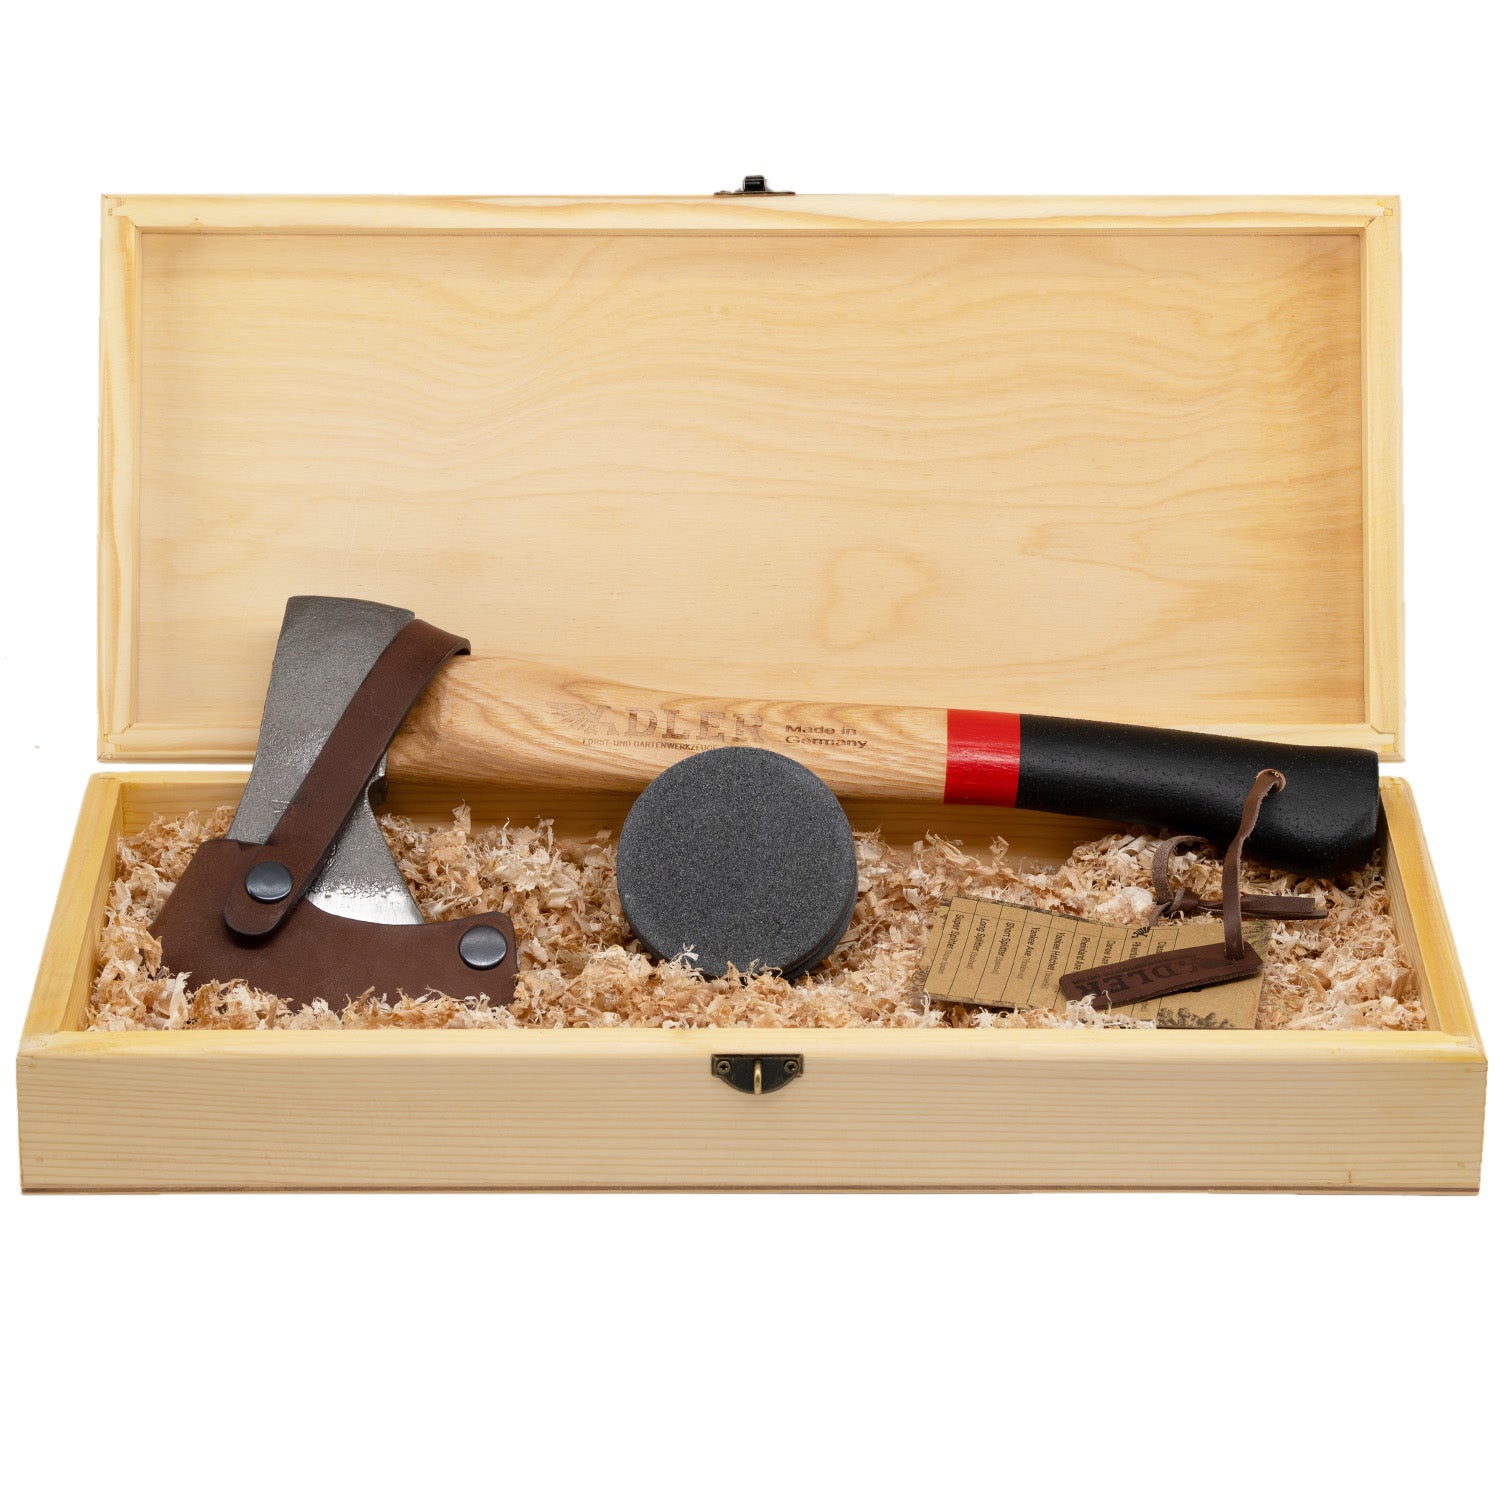 Adler Hatchet Gift Set (incl. Wooden Box)